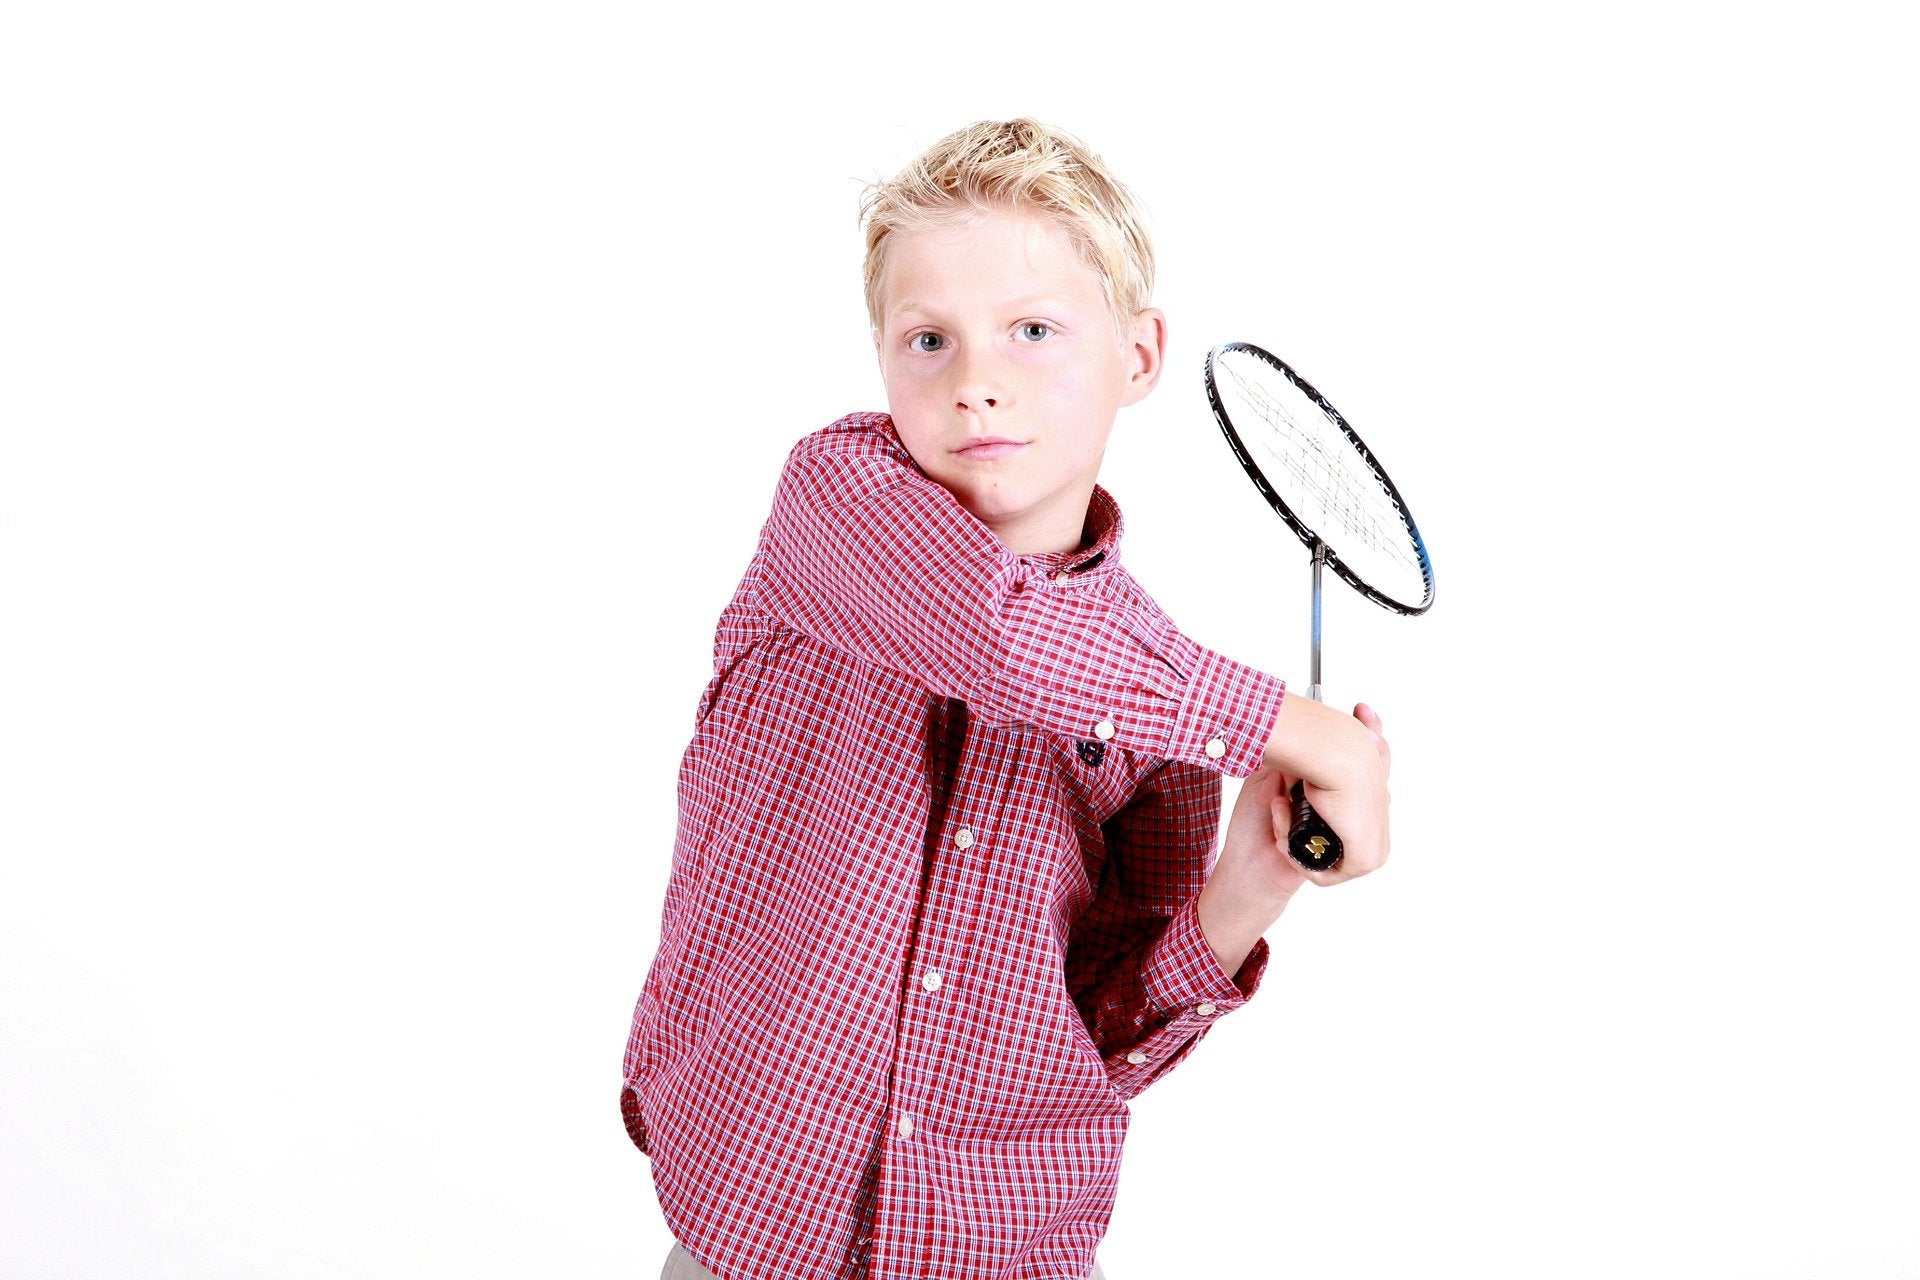 Boy holding a badminton racket